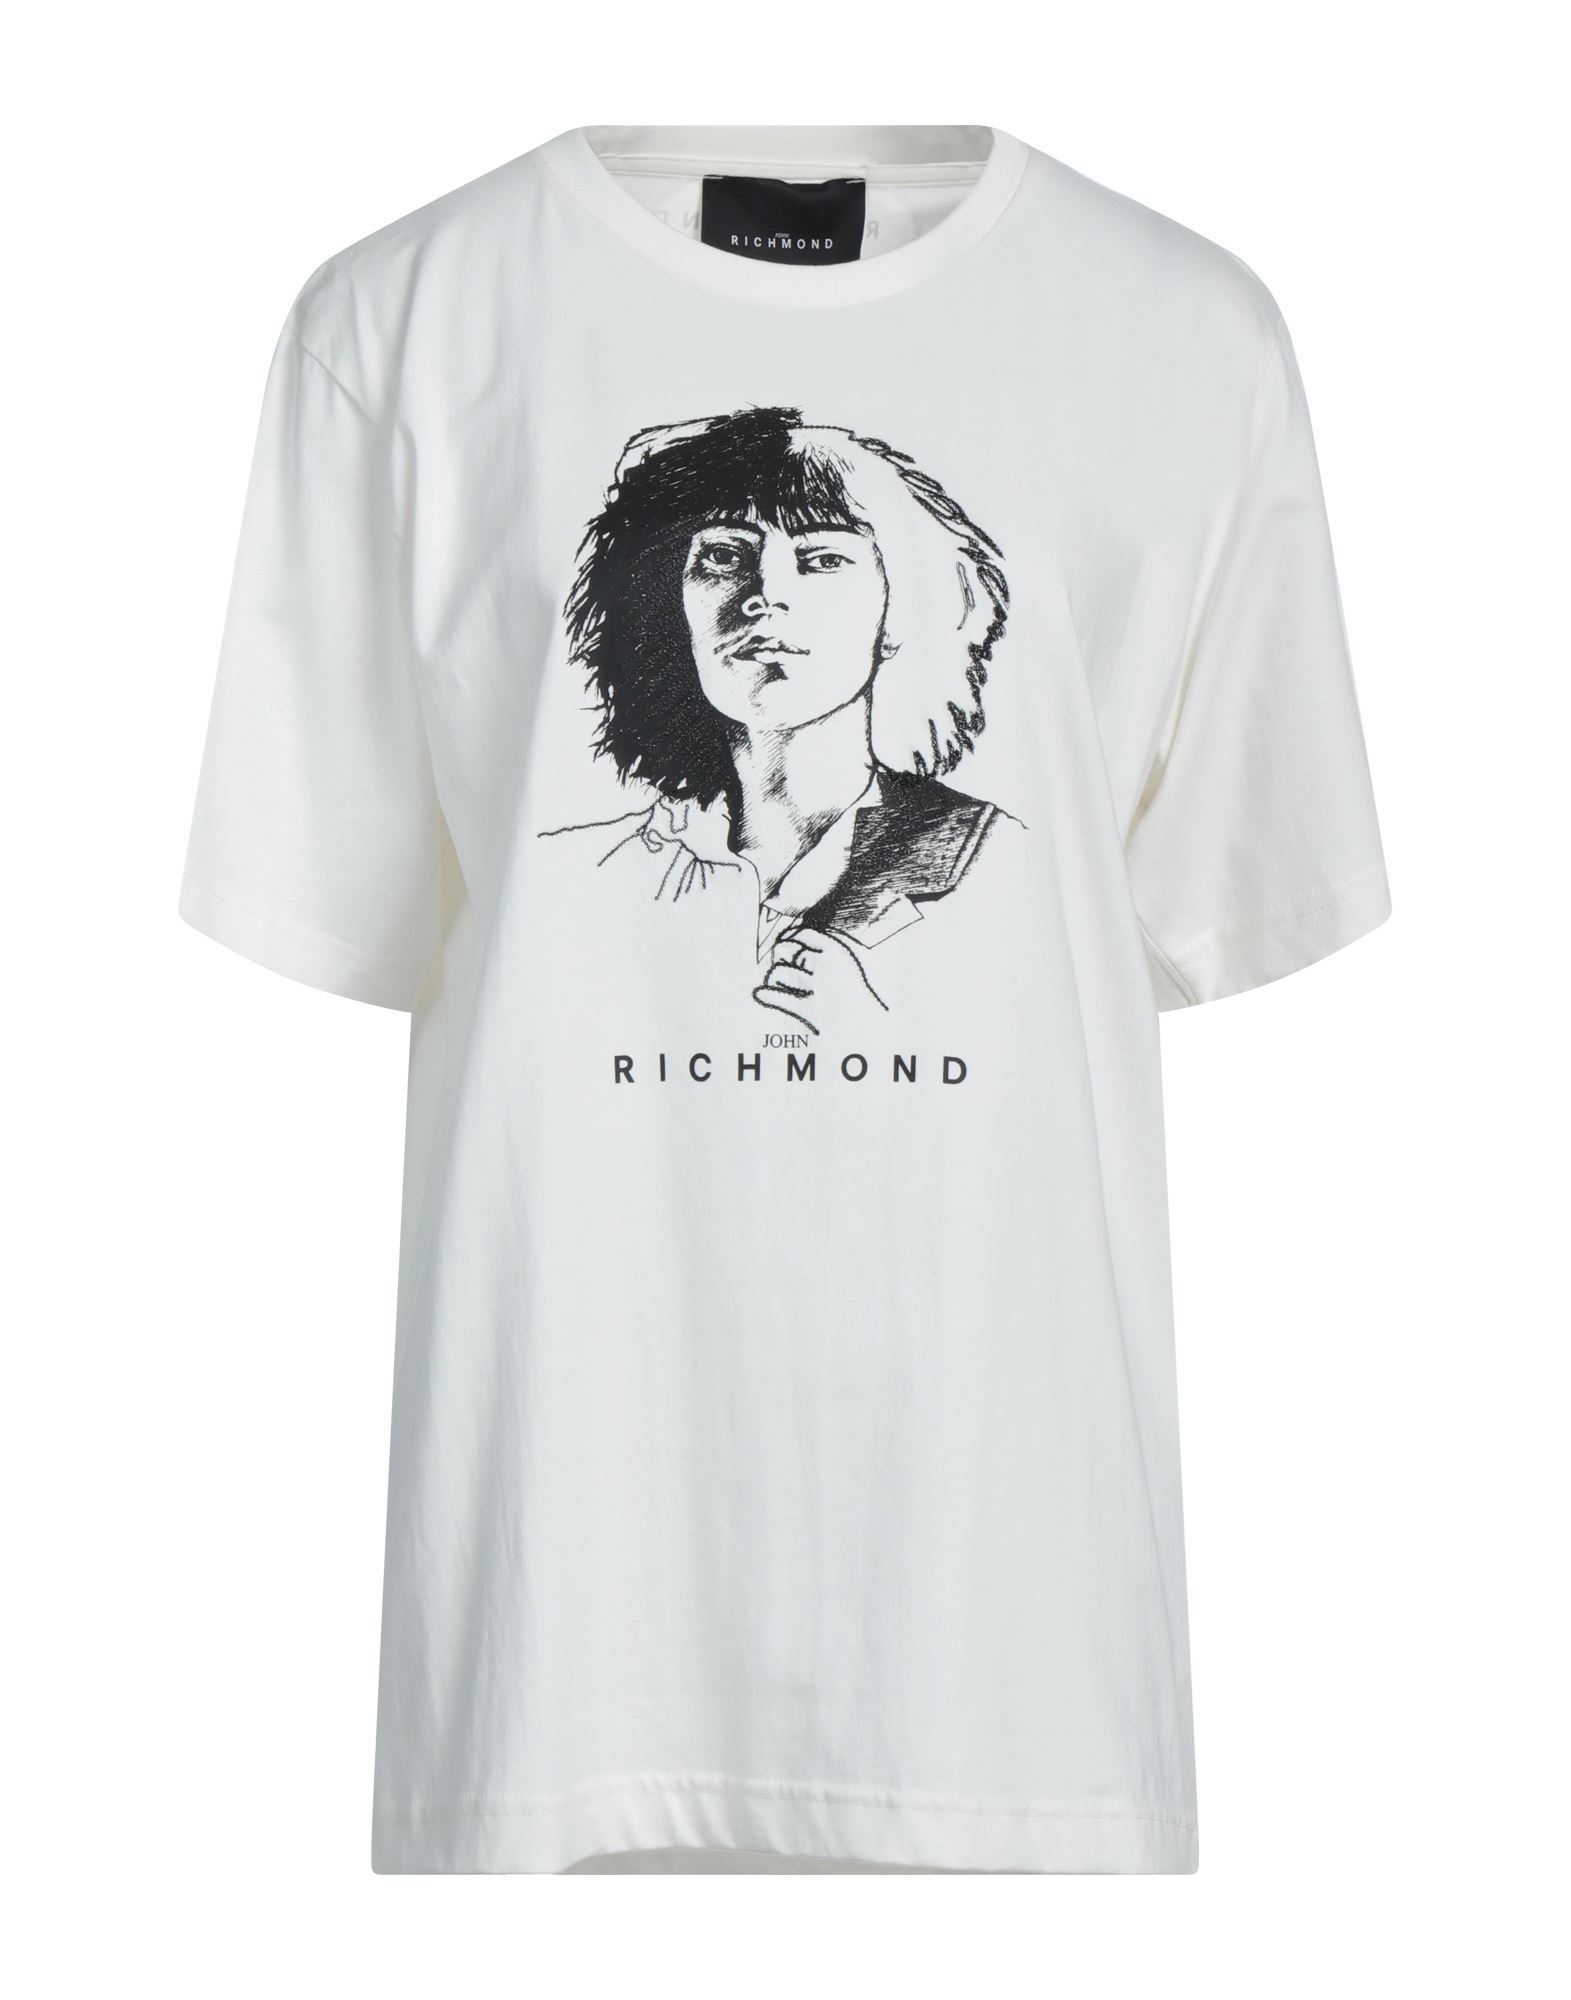 JOHN RICHMOND T-shirts Damen Weiß von JOHN RICHMOND